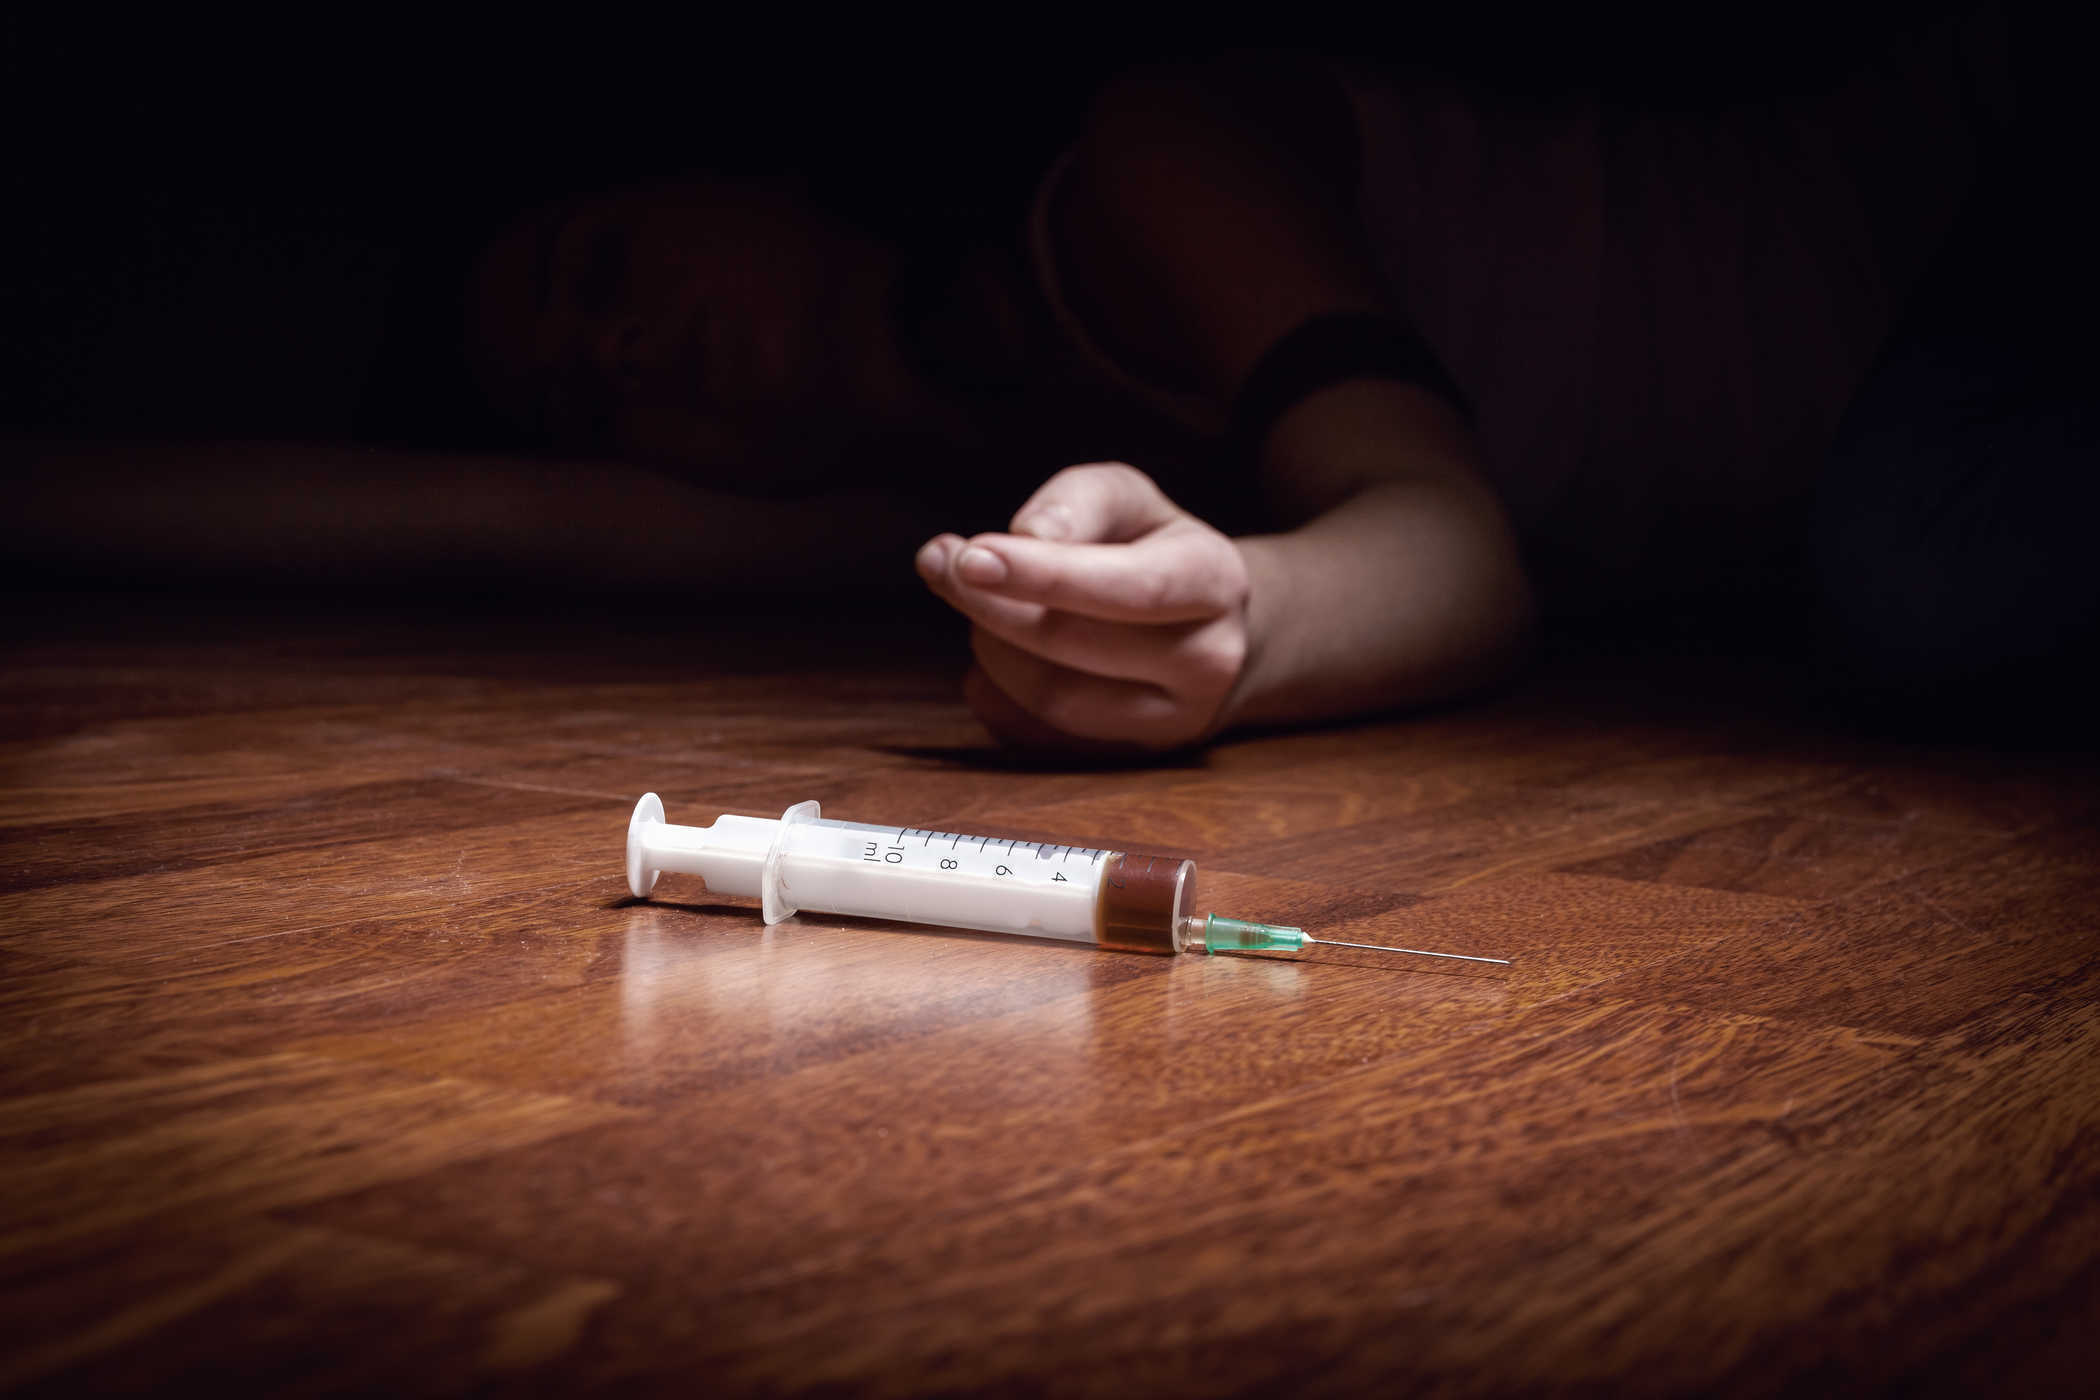 خطوات لمساعدة الأشخاص الذين لديهم جرعة زائدة من المخدرات